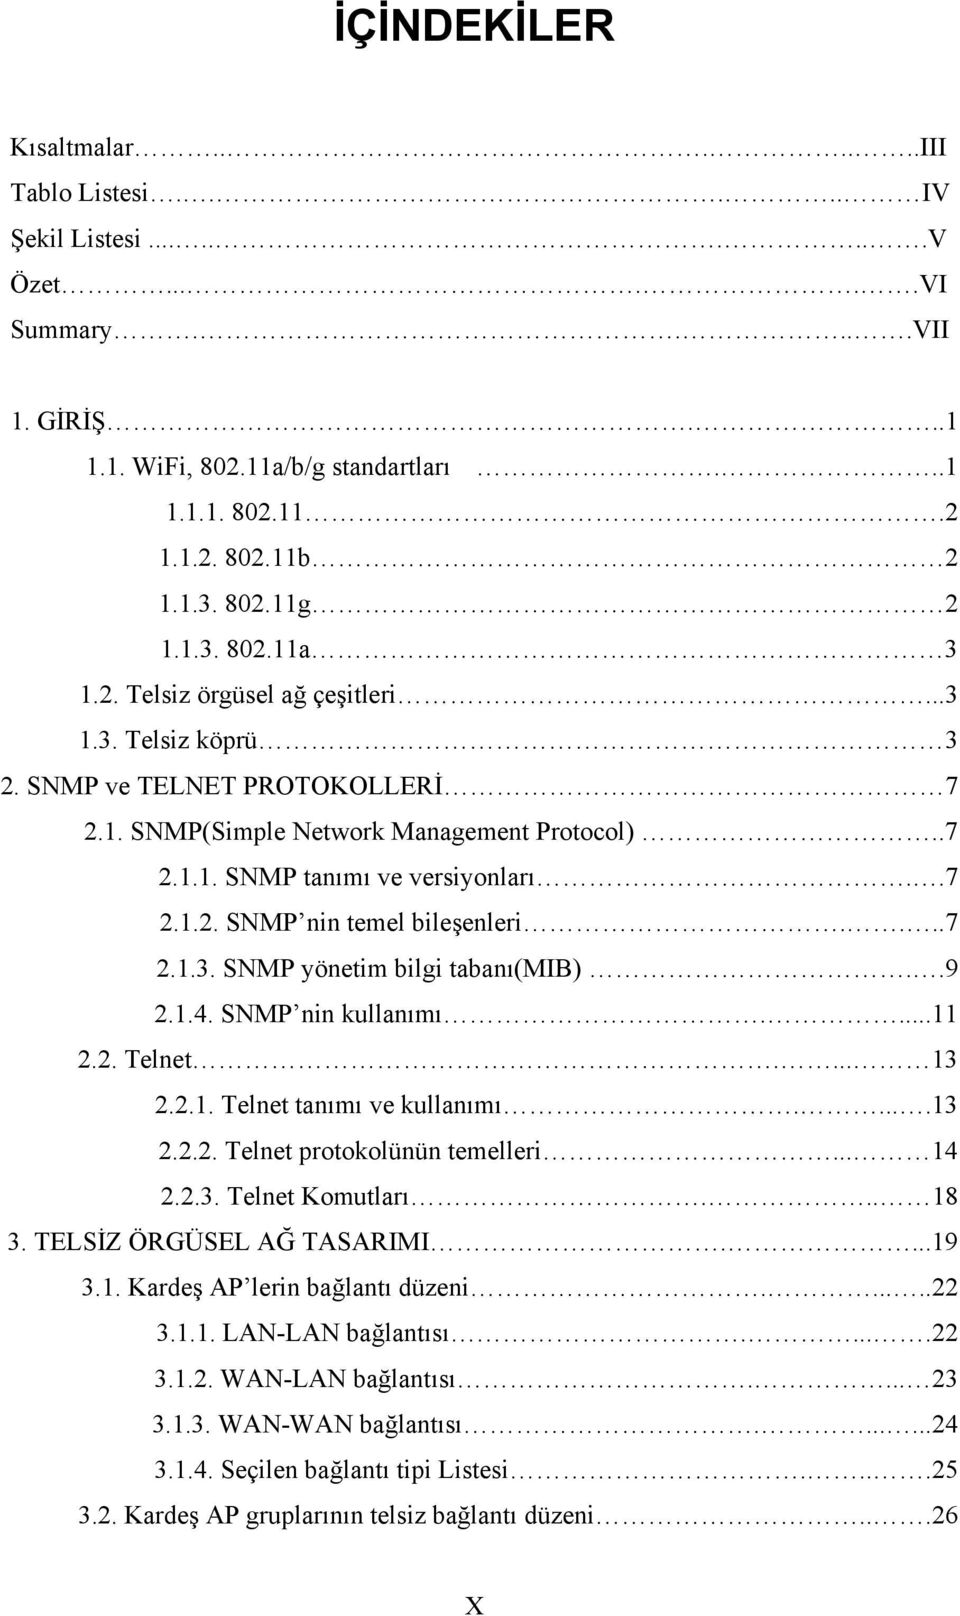 .7 2.1.2. SNMP nin temel bileşenleri....7 2.1.3. SNMP yönetim bilgi tabanı(mib)..9 2.1.4. SNMP nin kullanımı....11 2.2. Telnet.... 13 2.2.1. Telnet tanımı ve kullanımı.....13 2.2.2. Telnet protokolünün temelleri.